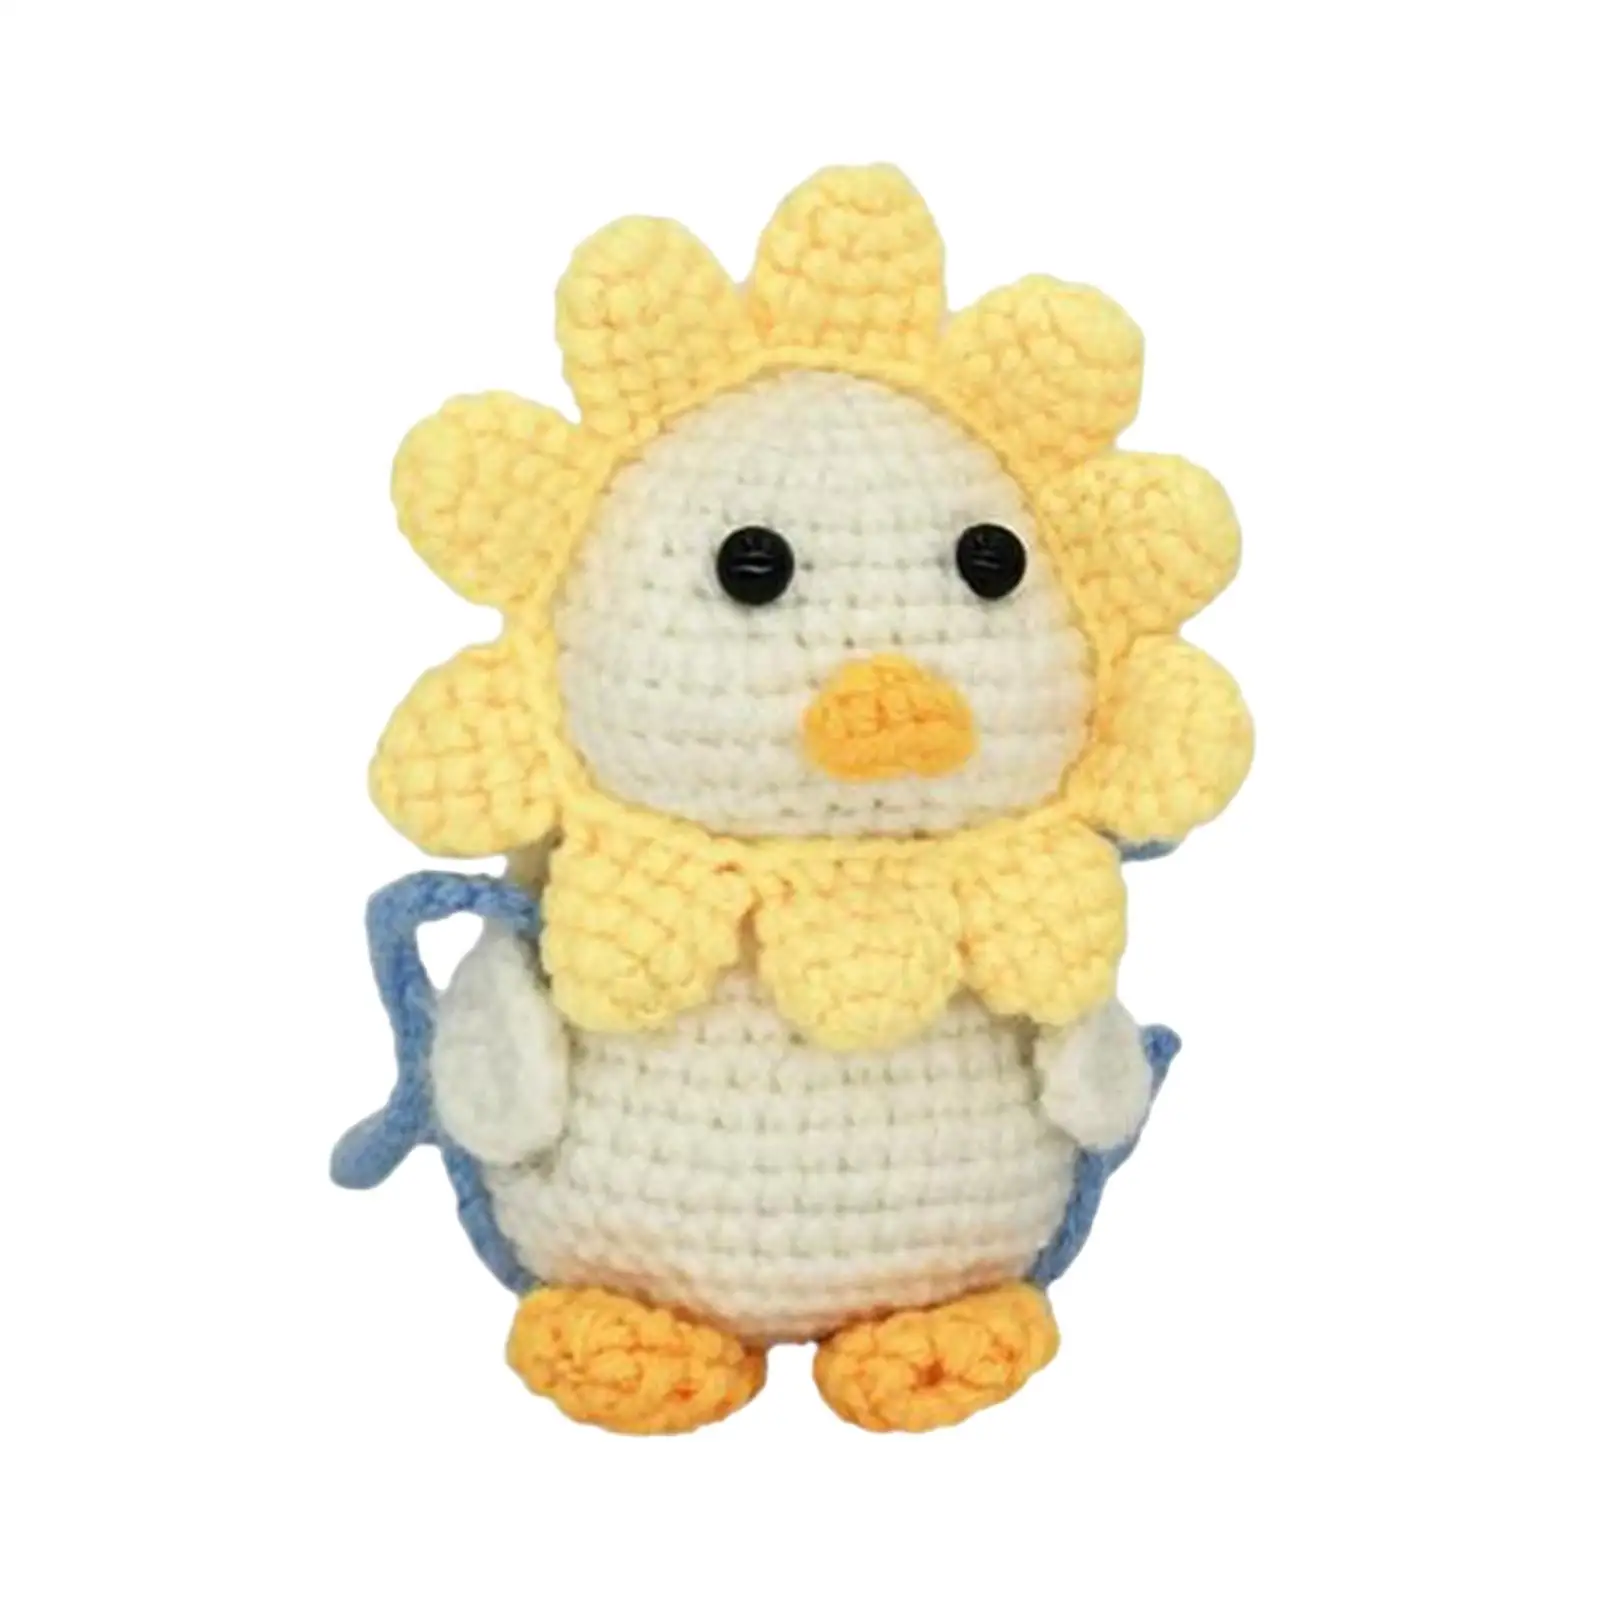 Crochet Starter, Doll Crochet for Beginners, DIYwork Handmade Decorative Animal Crochet Birthday Gift Teens